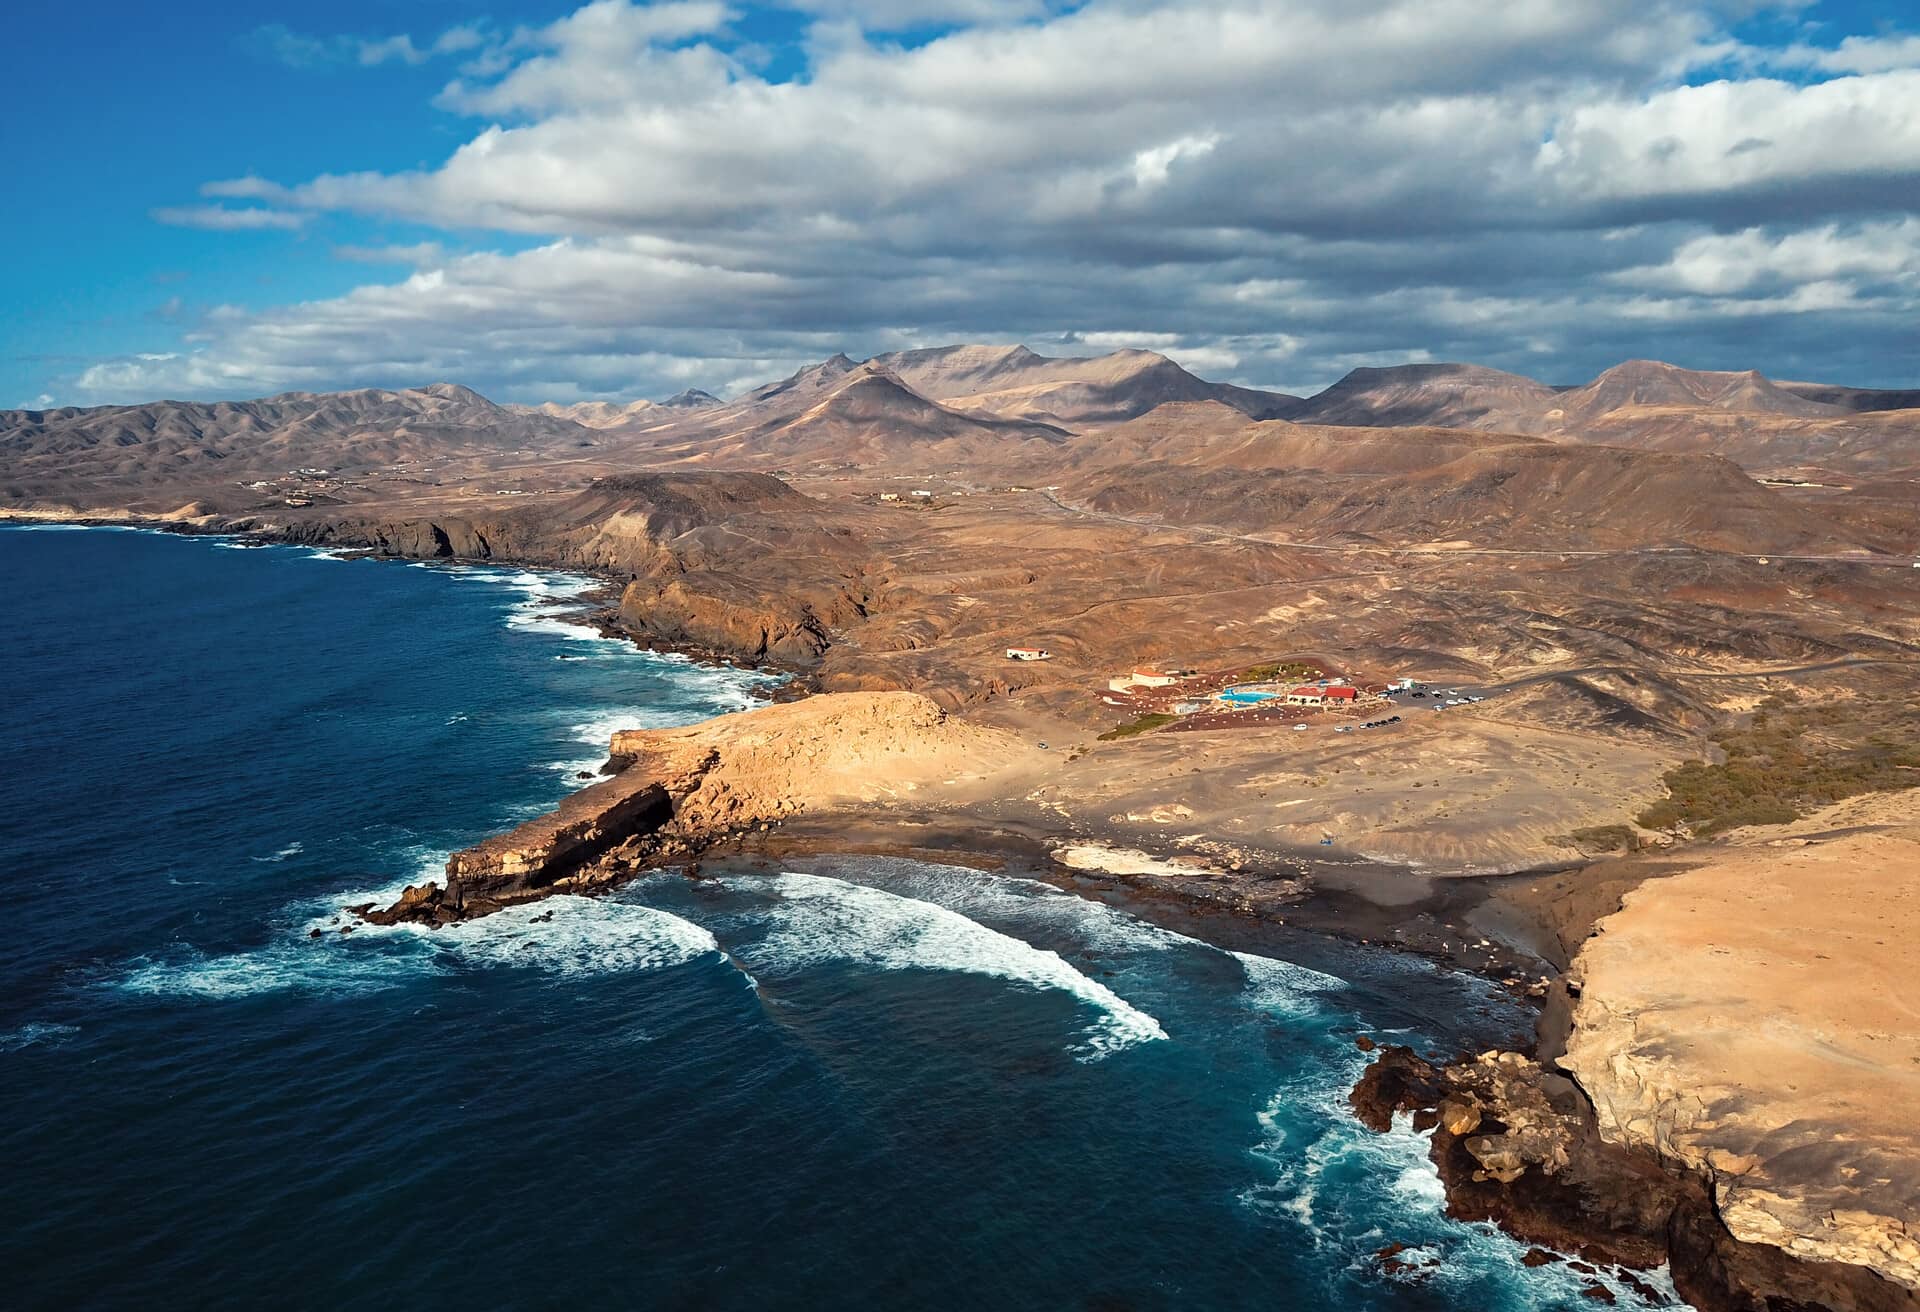 Vista impressionante das ilhas Canárias em época baixa.